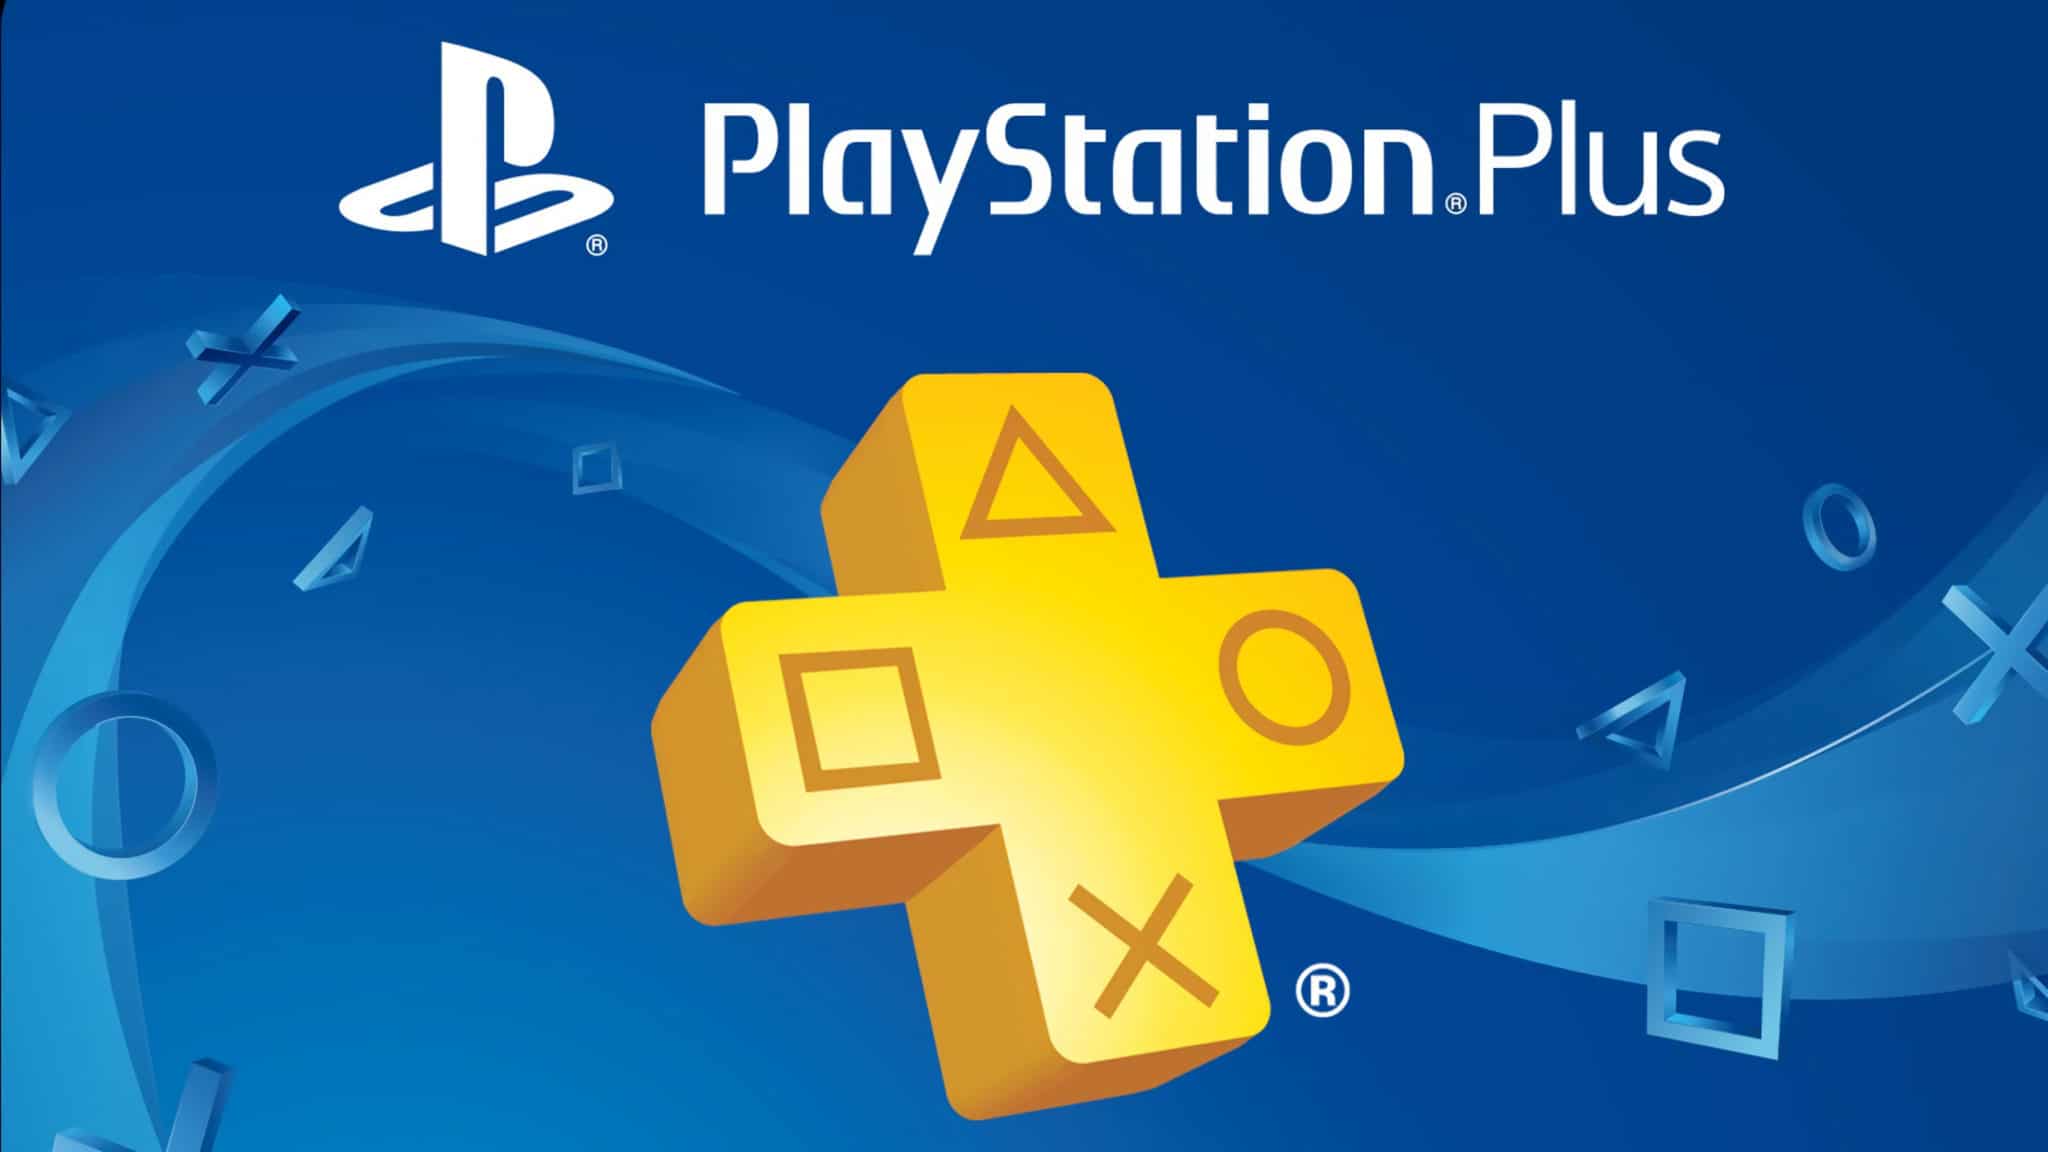 PlayStation Plus de 3 meses está com 50% de desconto para novos assinantes